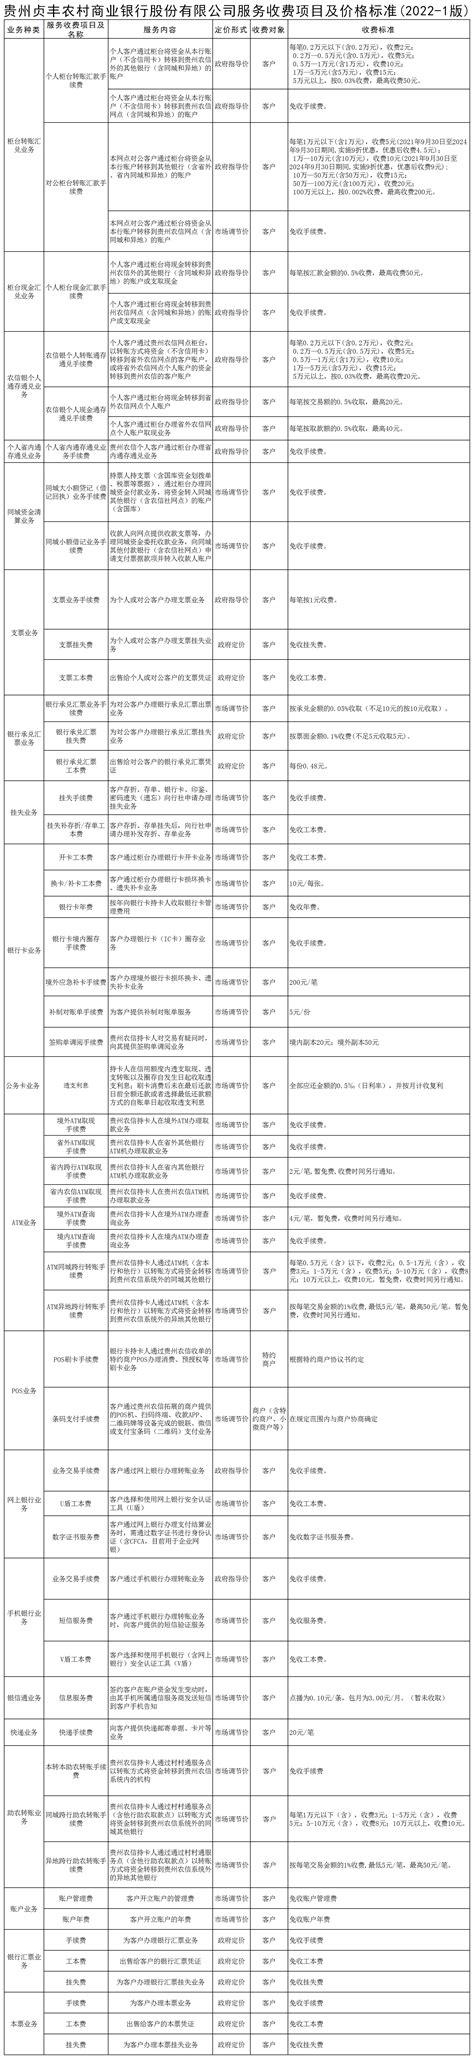 贵州贞丰农村商业银行股份有限公司服务收费项目及价格标准(2022-1版)